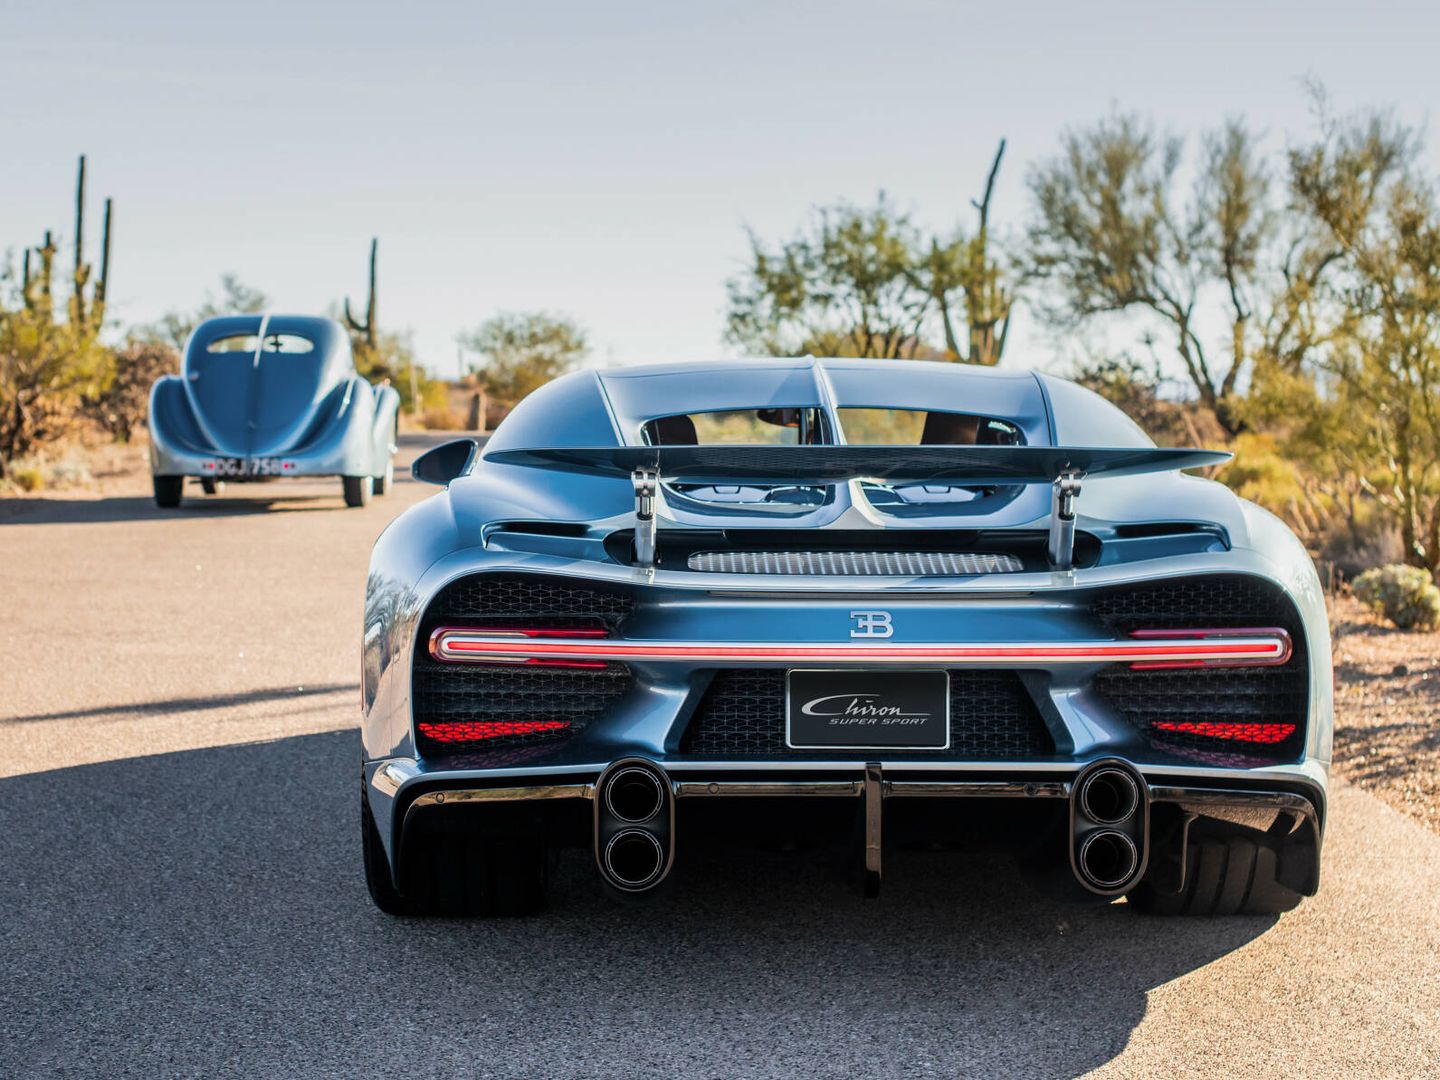 Casi 90 años después, llega el primer Bugatti que rinde tributo a uno de sus grandes iconos.